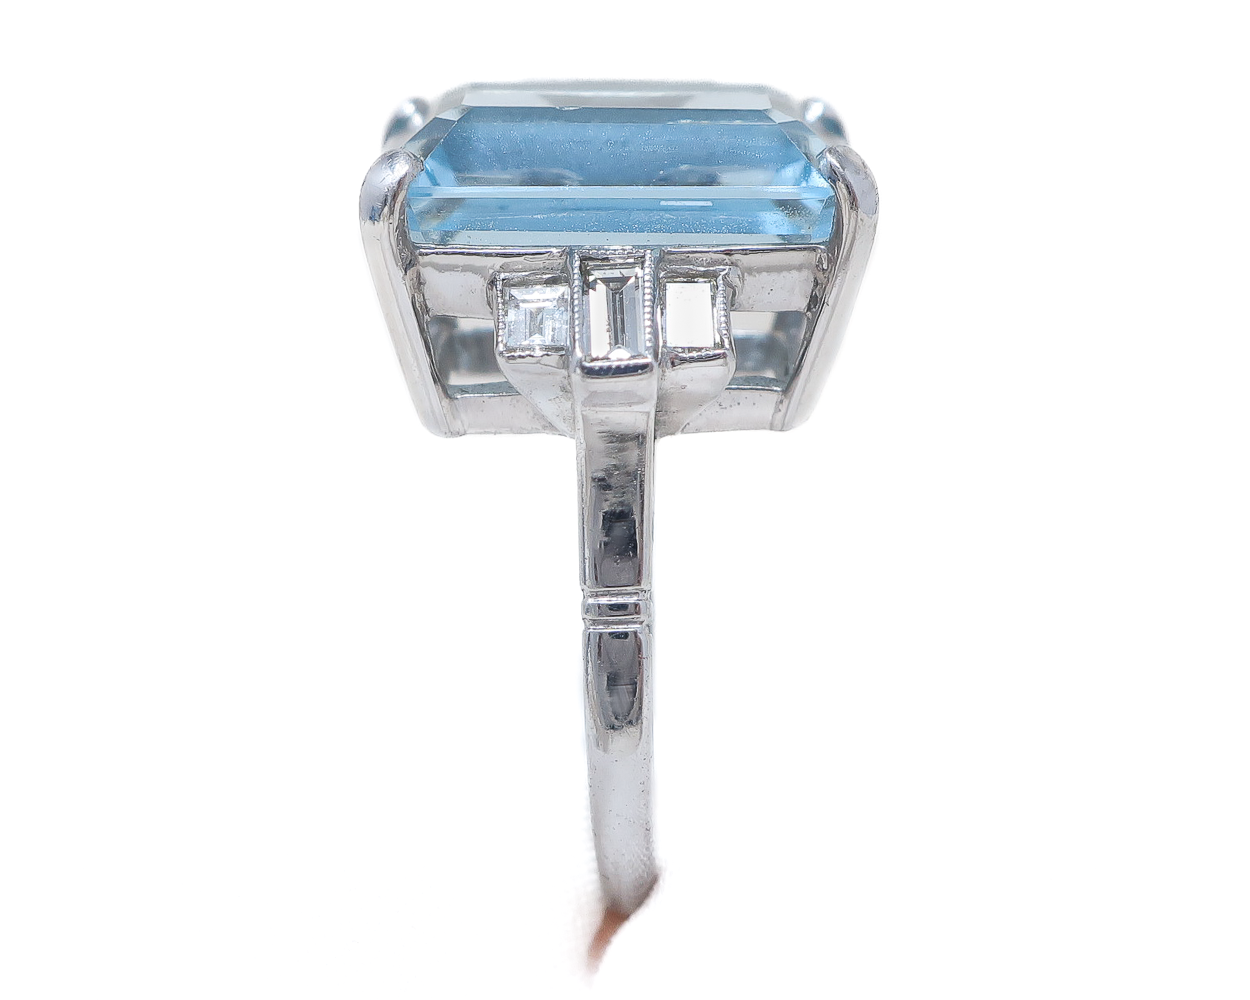 Midcentury Aquamarine Ring with Baguette Diamonds